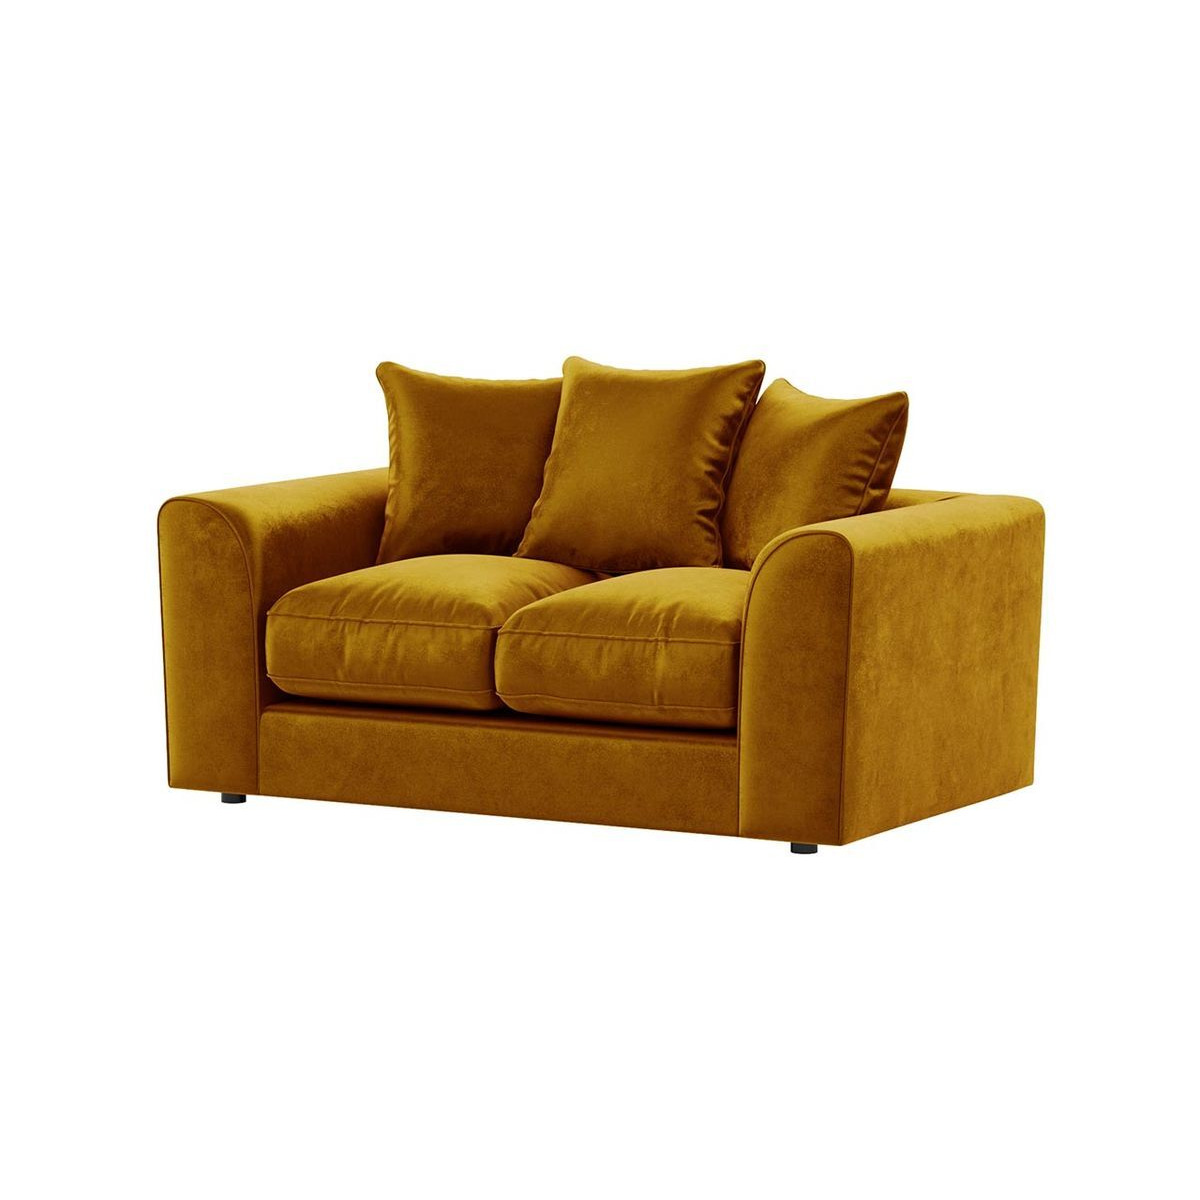 Dillon Velvet 2 Seater Sofa Bed, golden - image 1